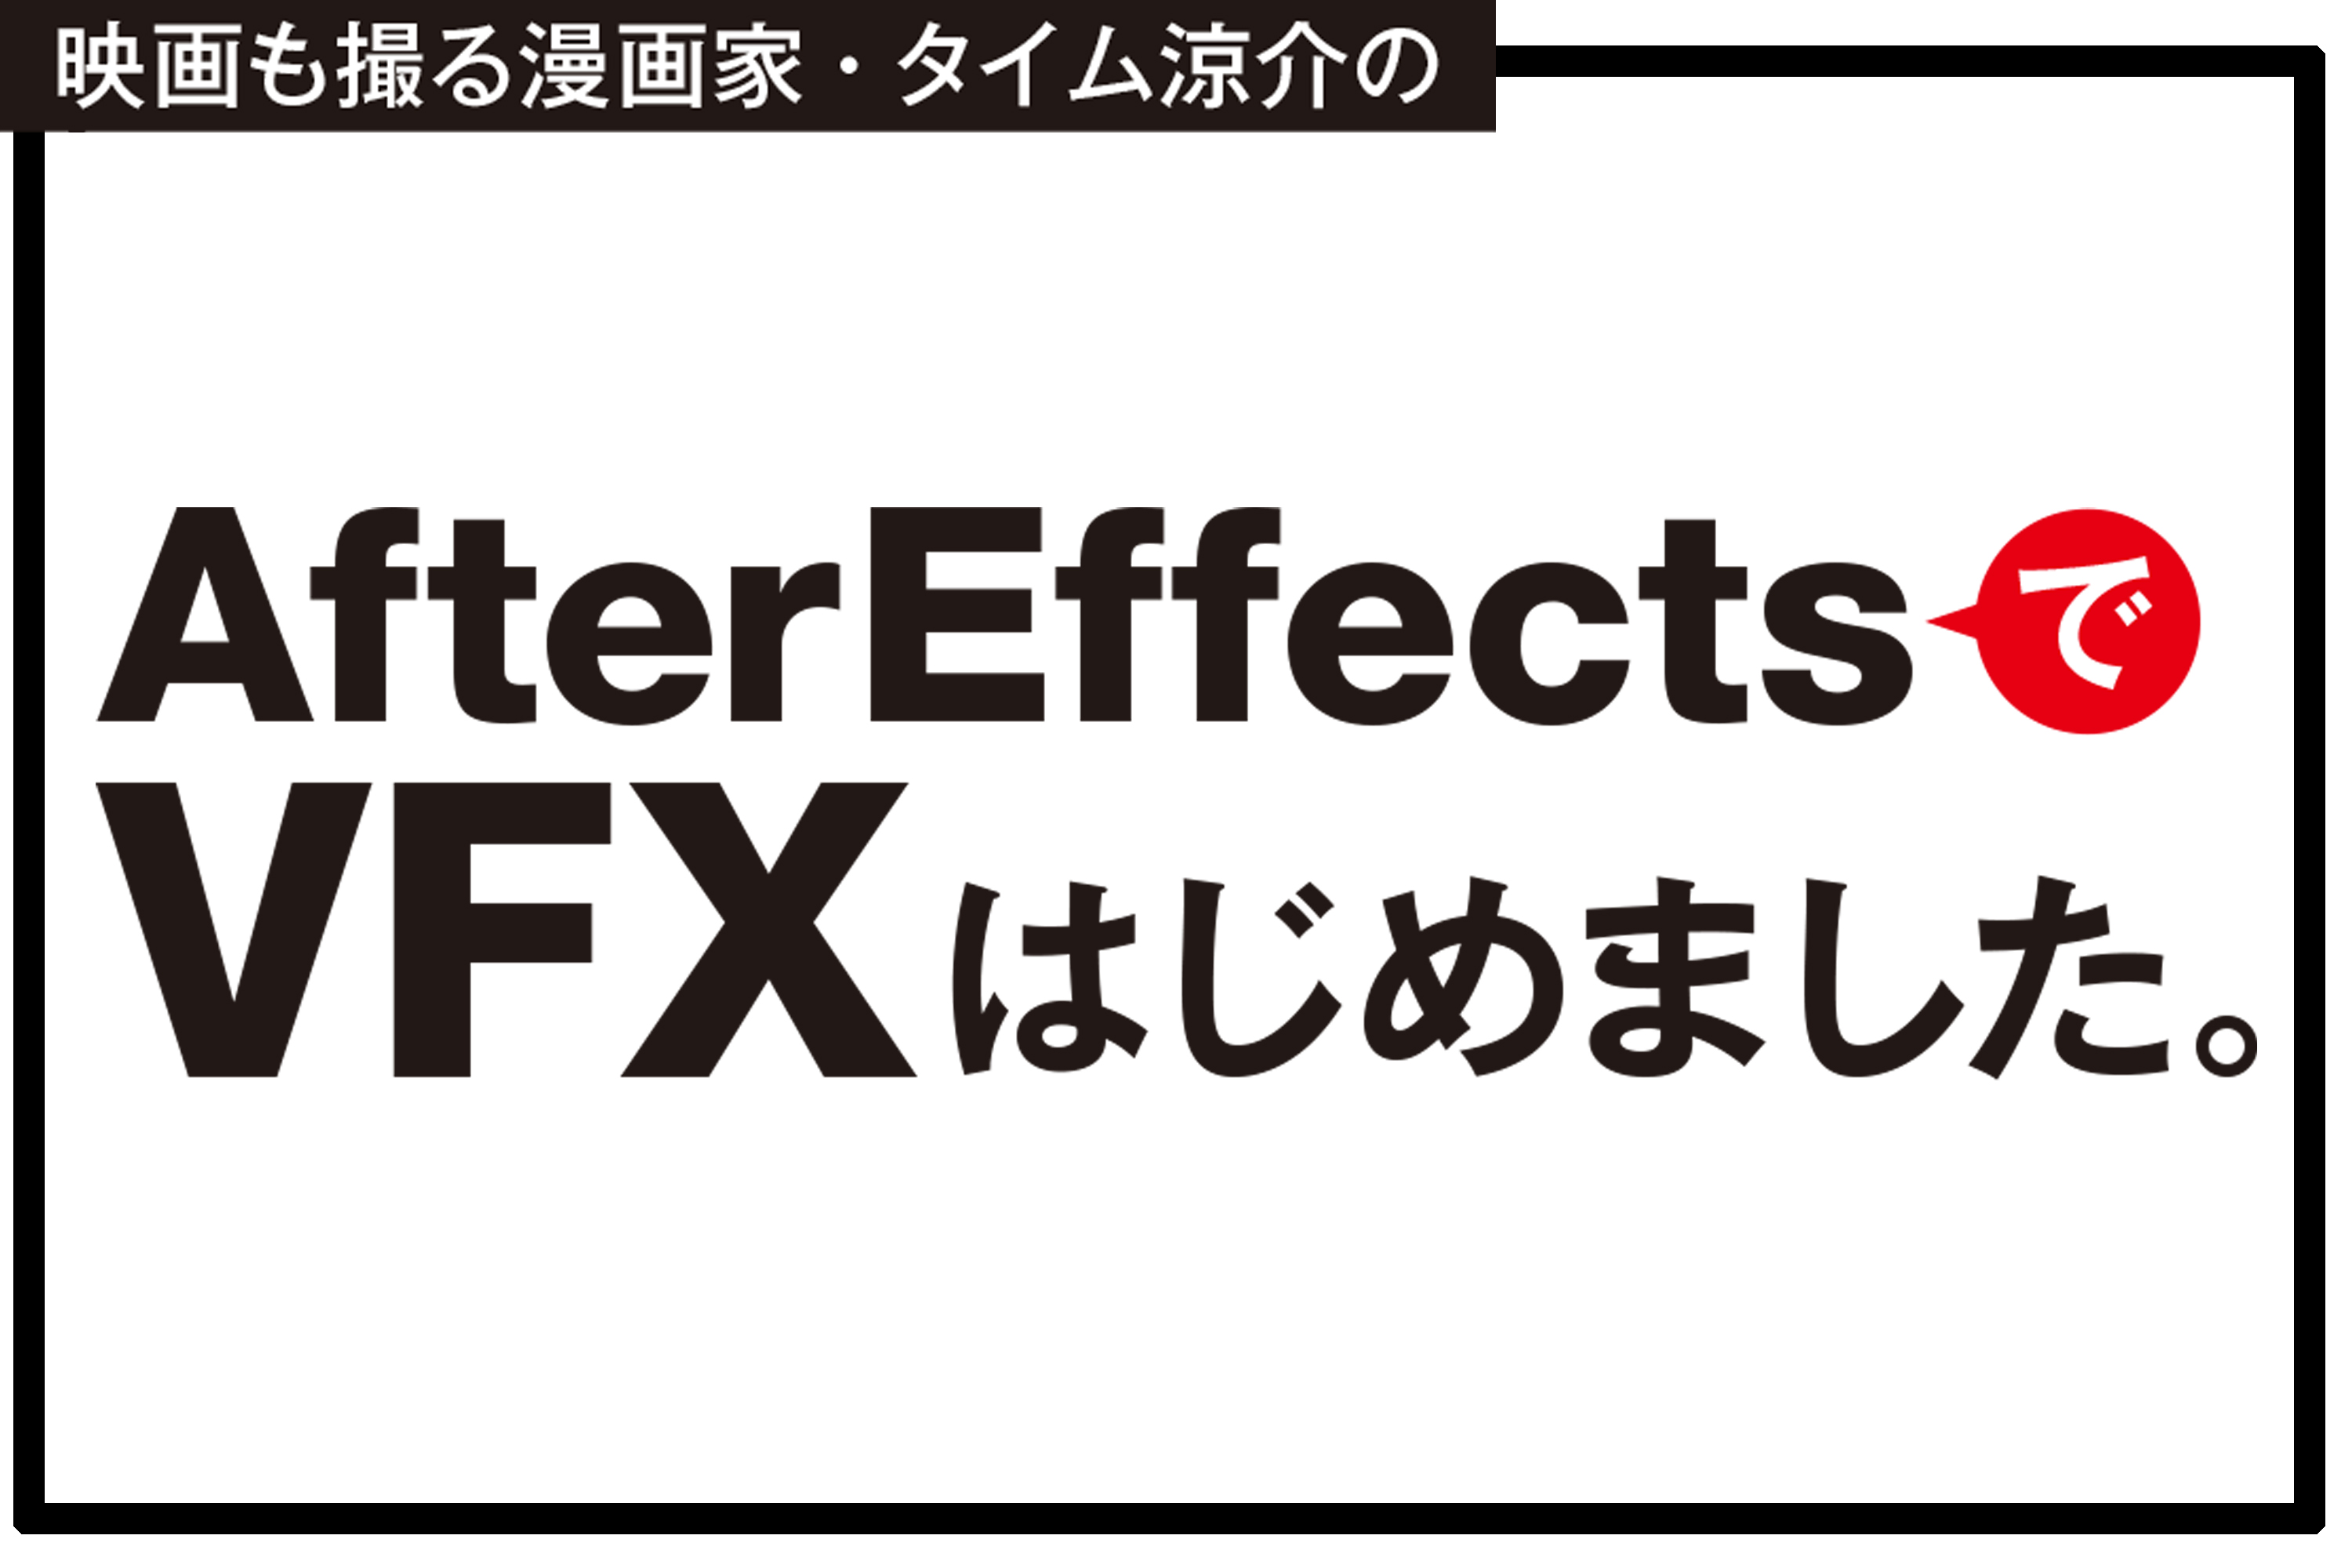 After Effectsでvfxはじめました Vol 5 無料プラグインsaberで